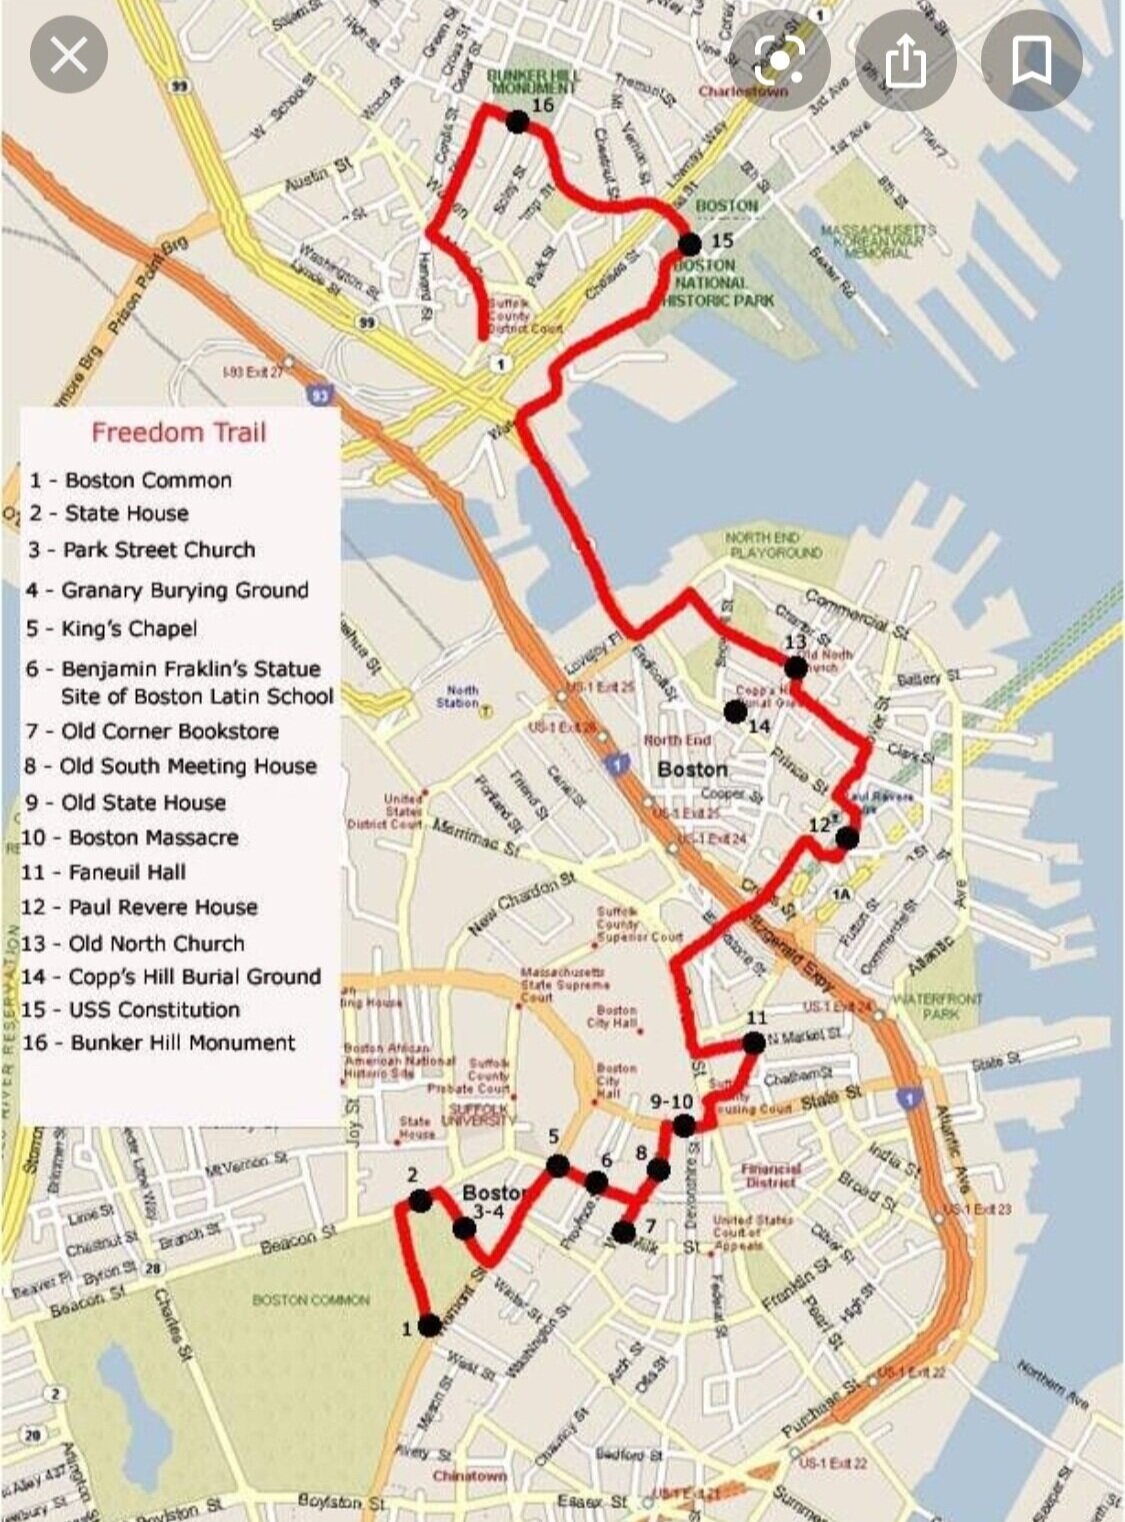 freedom trail walking tour in boston